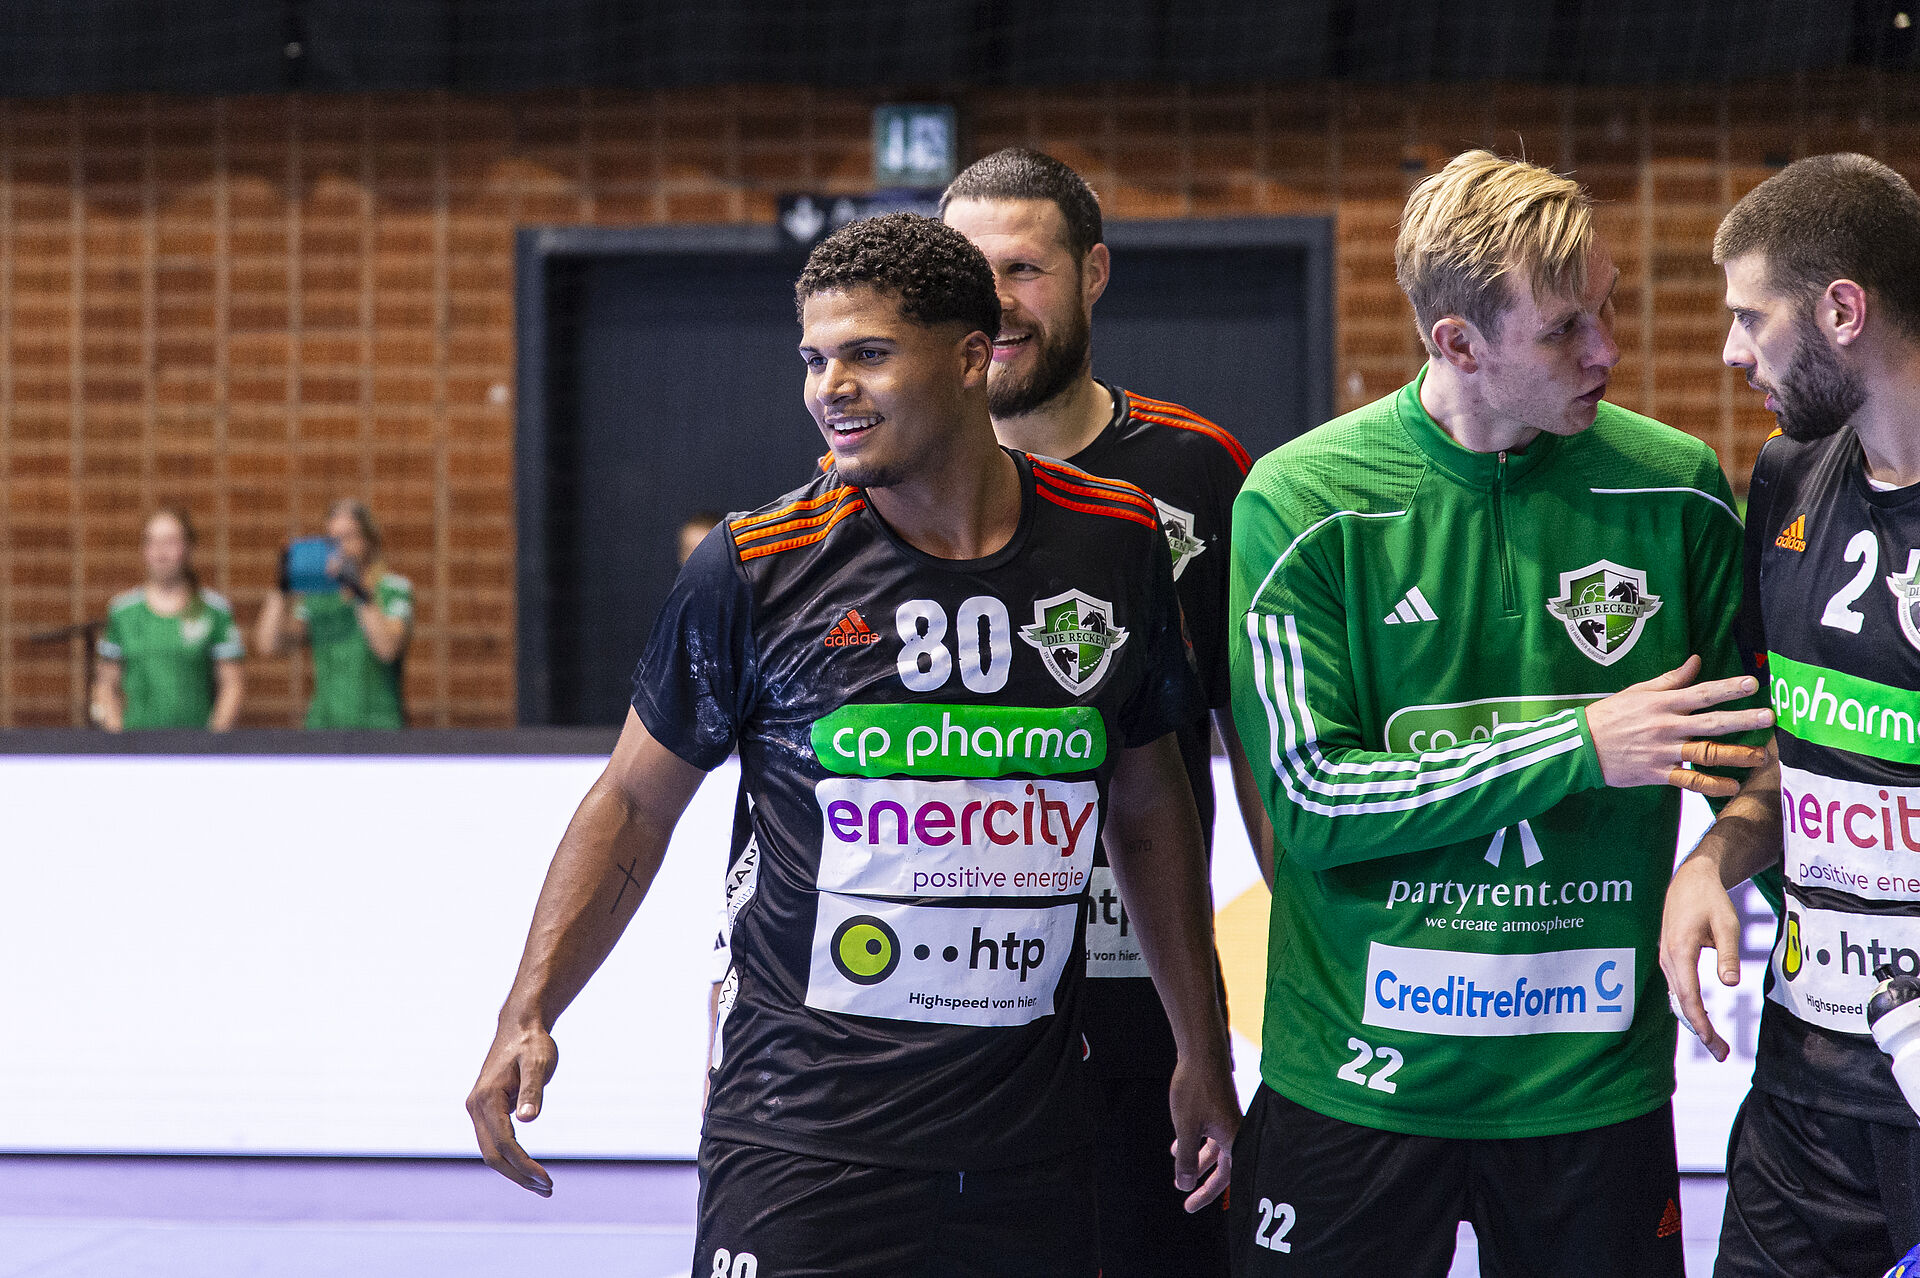 4 Handballer freuen sich und tragen Trikos mit dem htp Sponsoring.